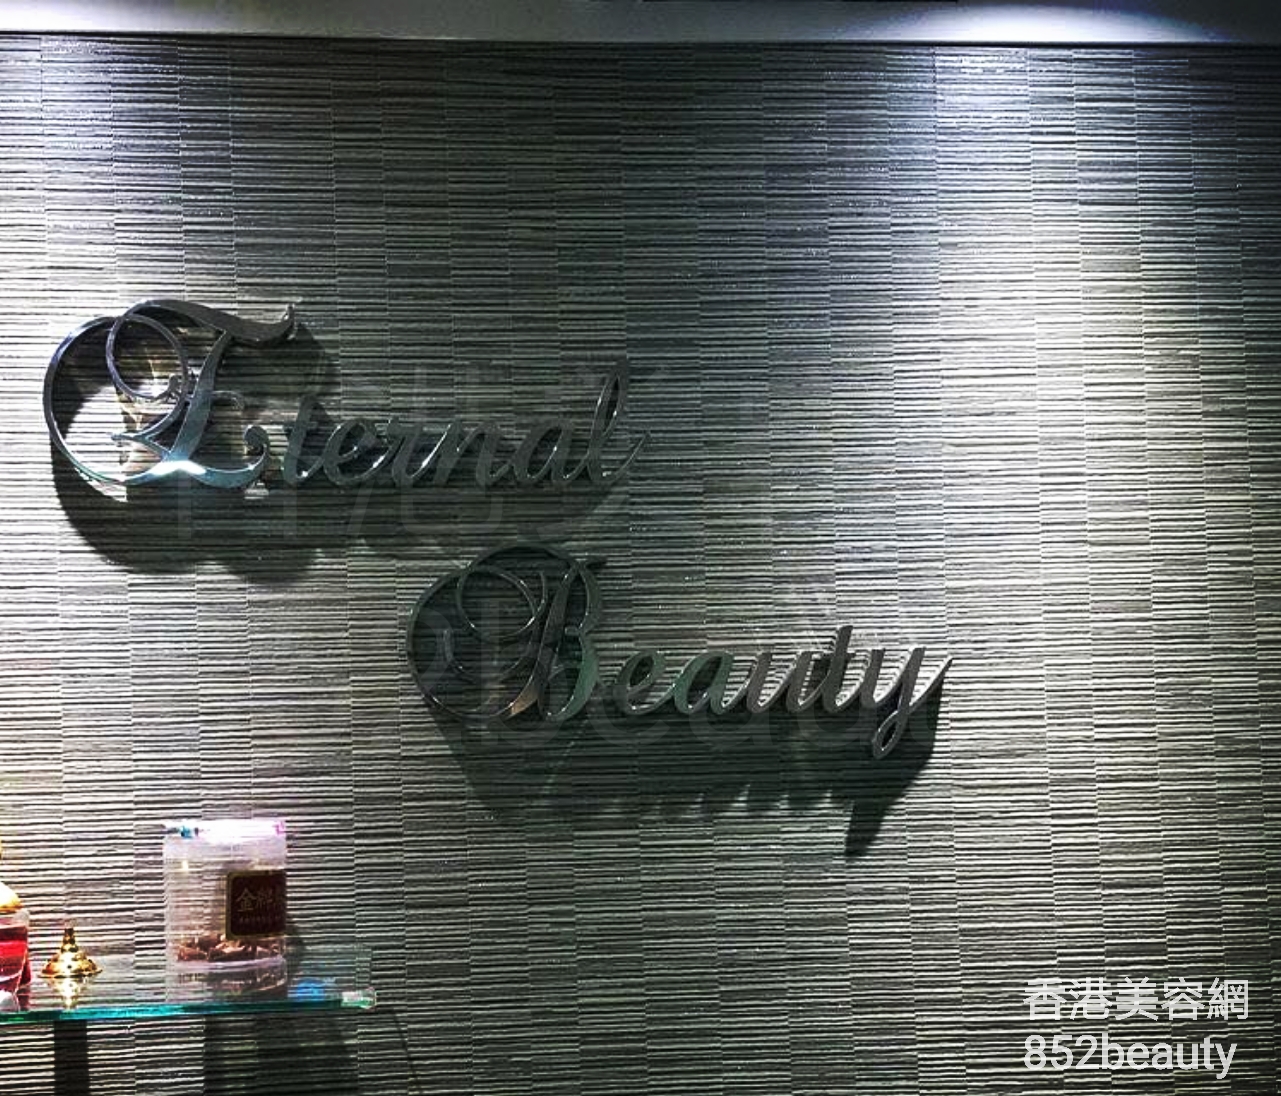 香港美容網 Hong Kong Beauty Salon 美容院 / 美容師: Eternal beauty